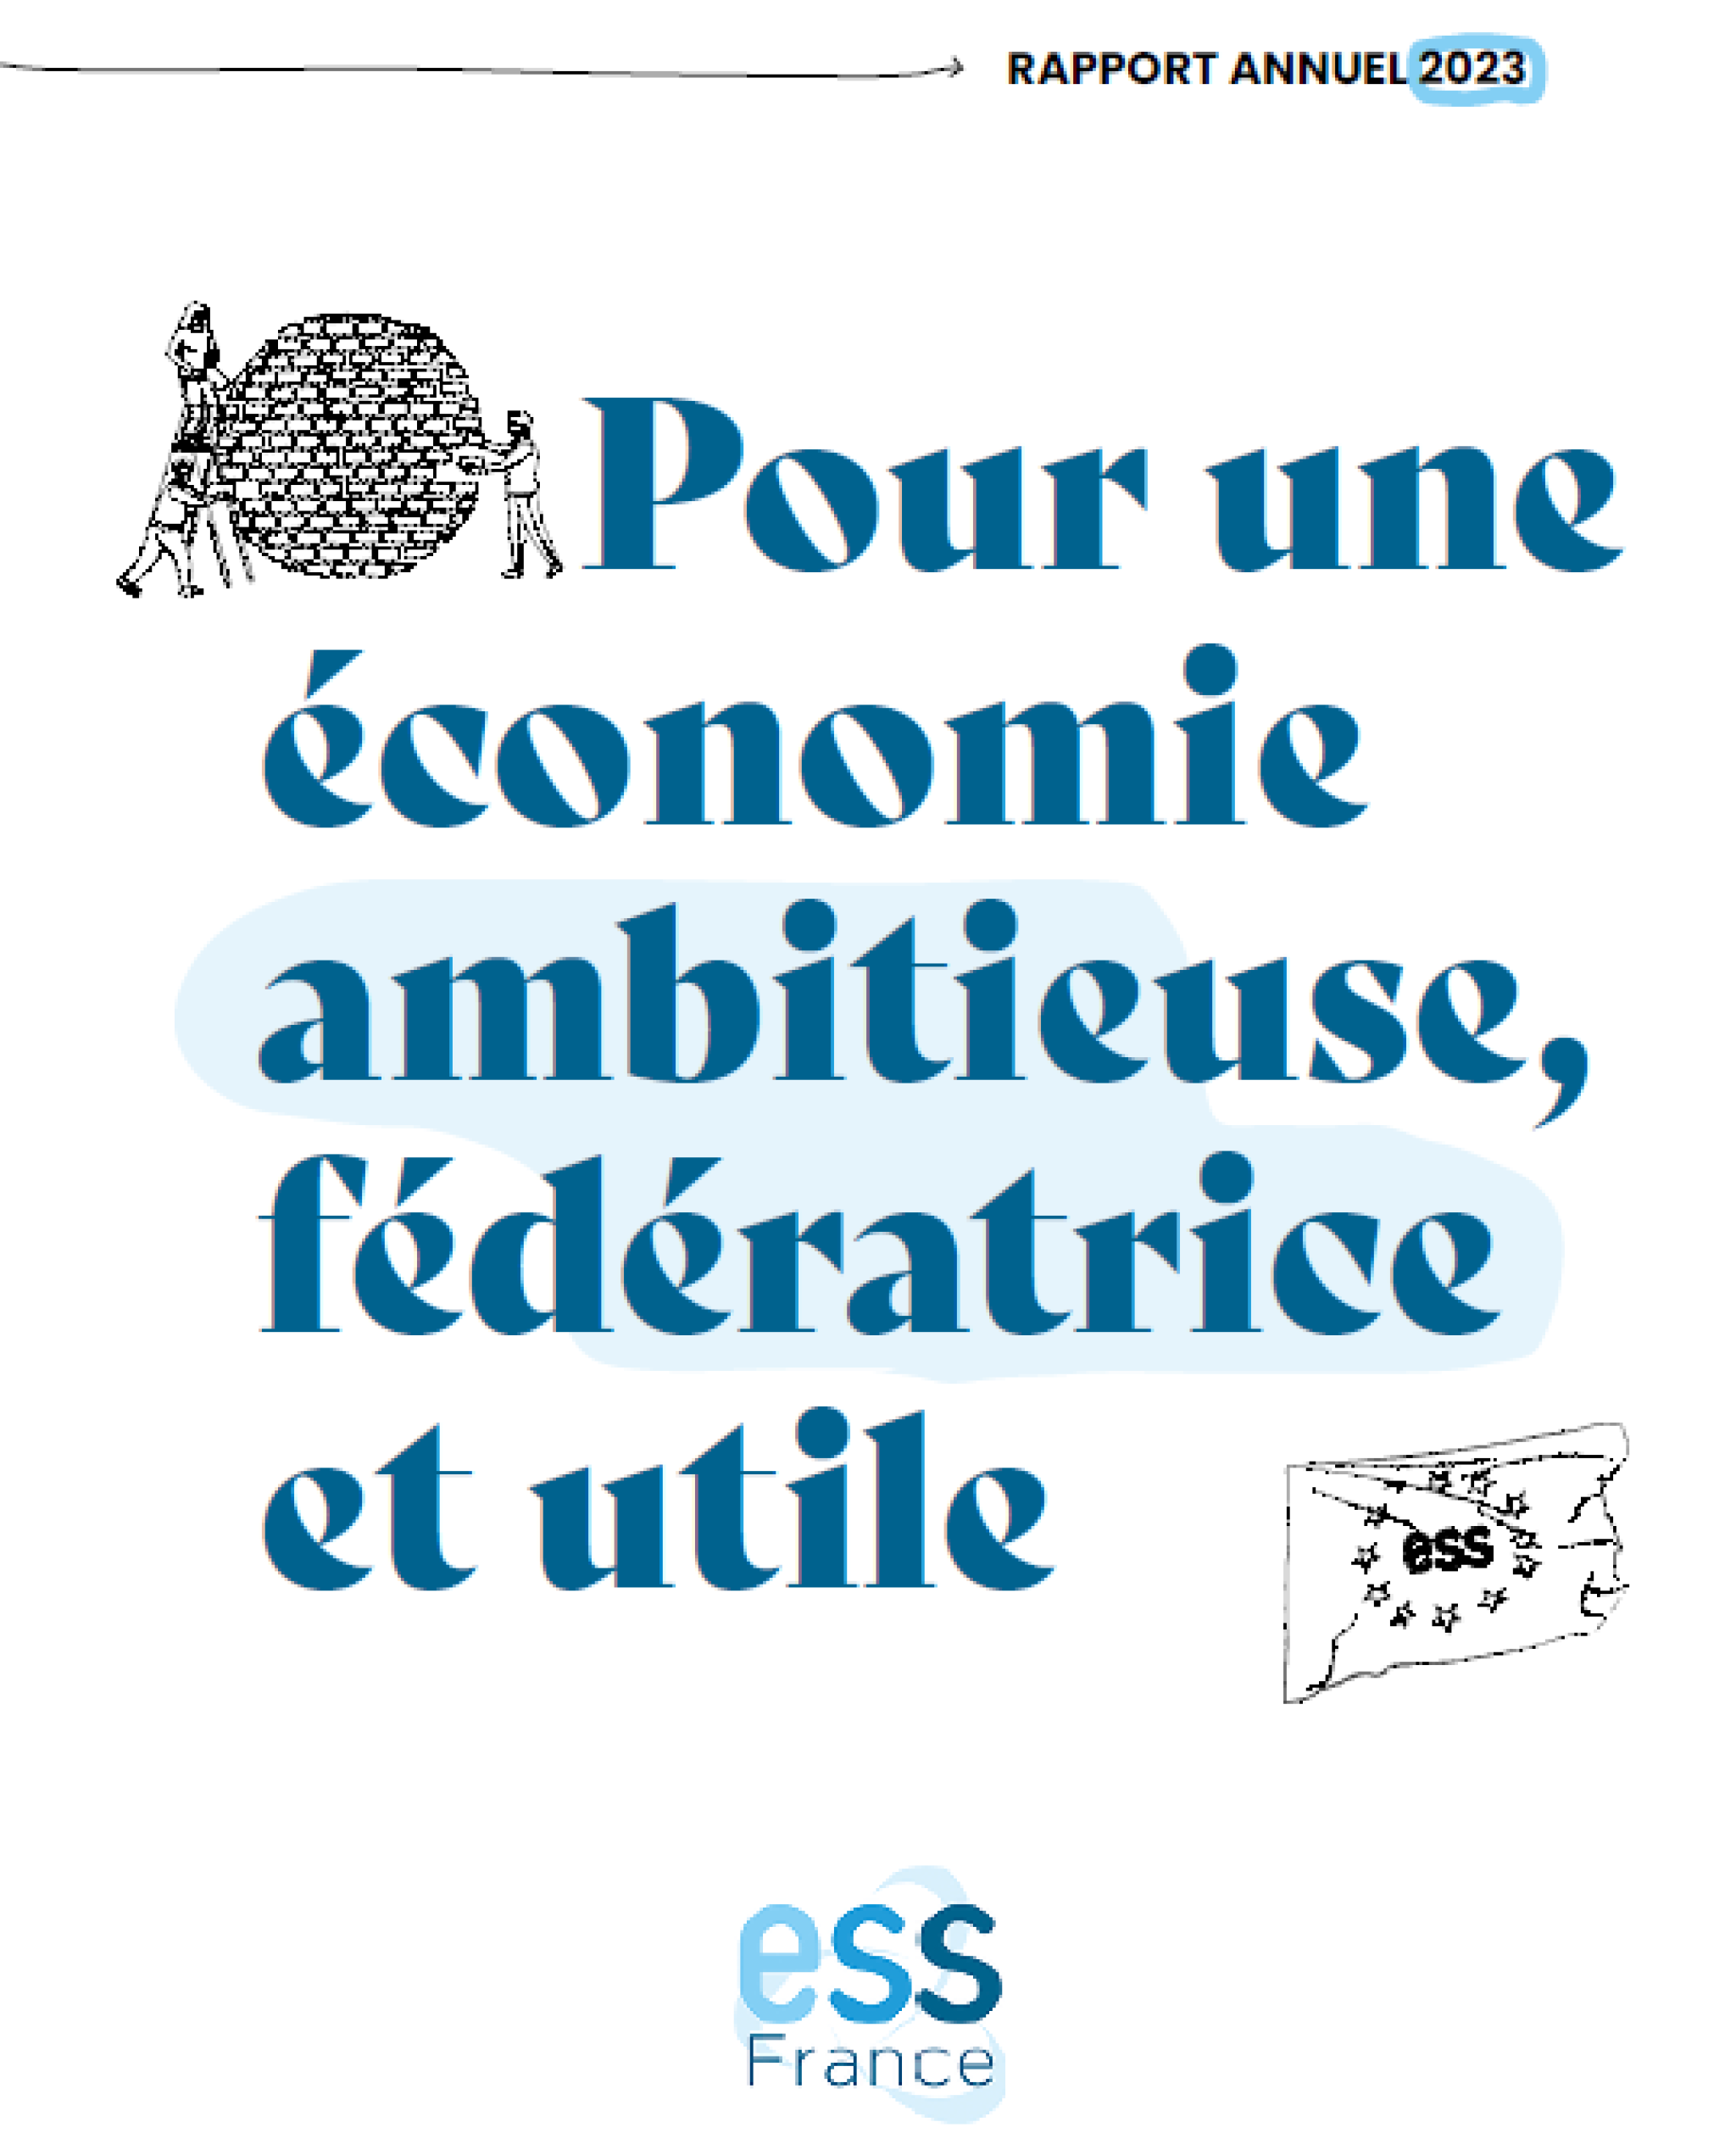 Rapport d'activités 2023 d'ESS France